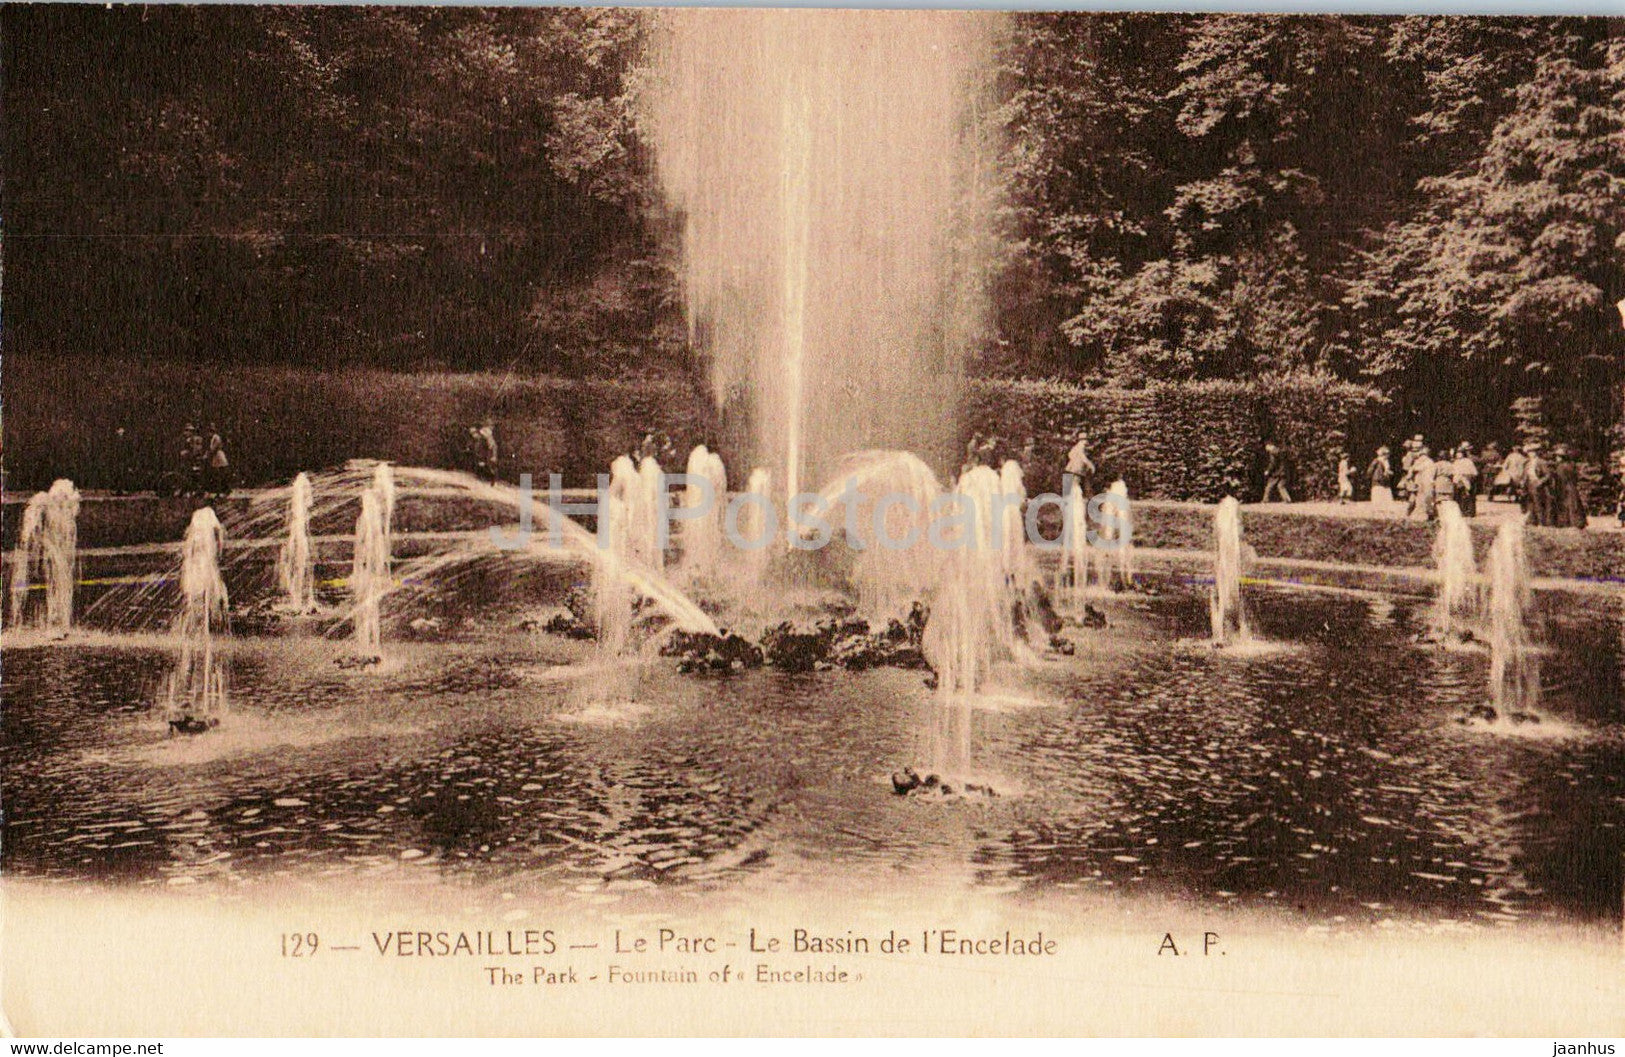 Versailles - Le Parc - Le Bassin de l'Encelade - 129 - old postcard - France - unused - JH Postcards